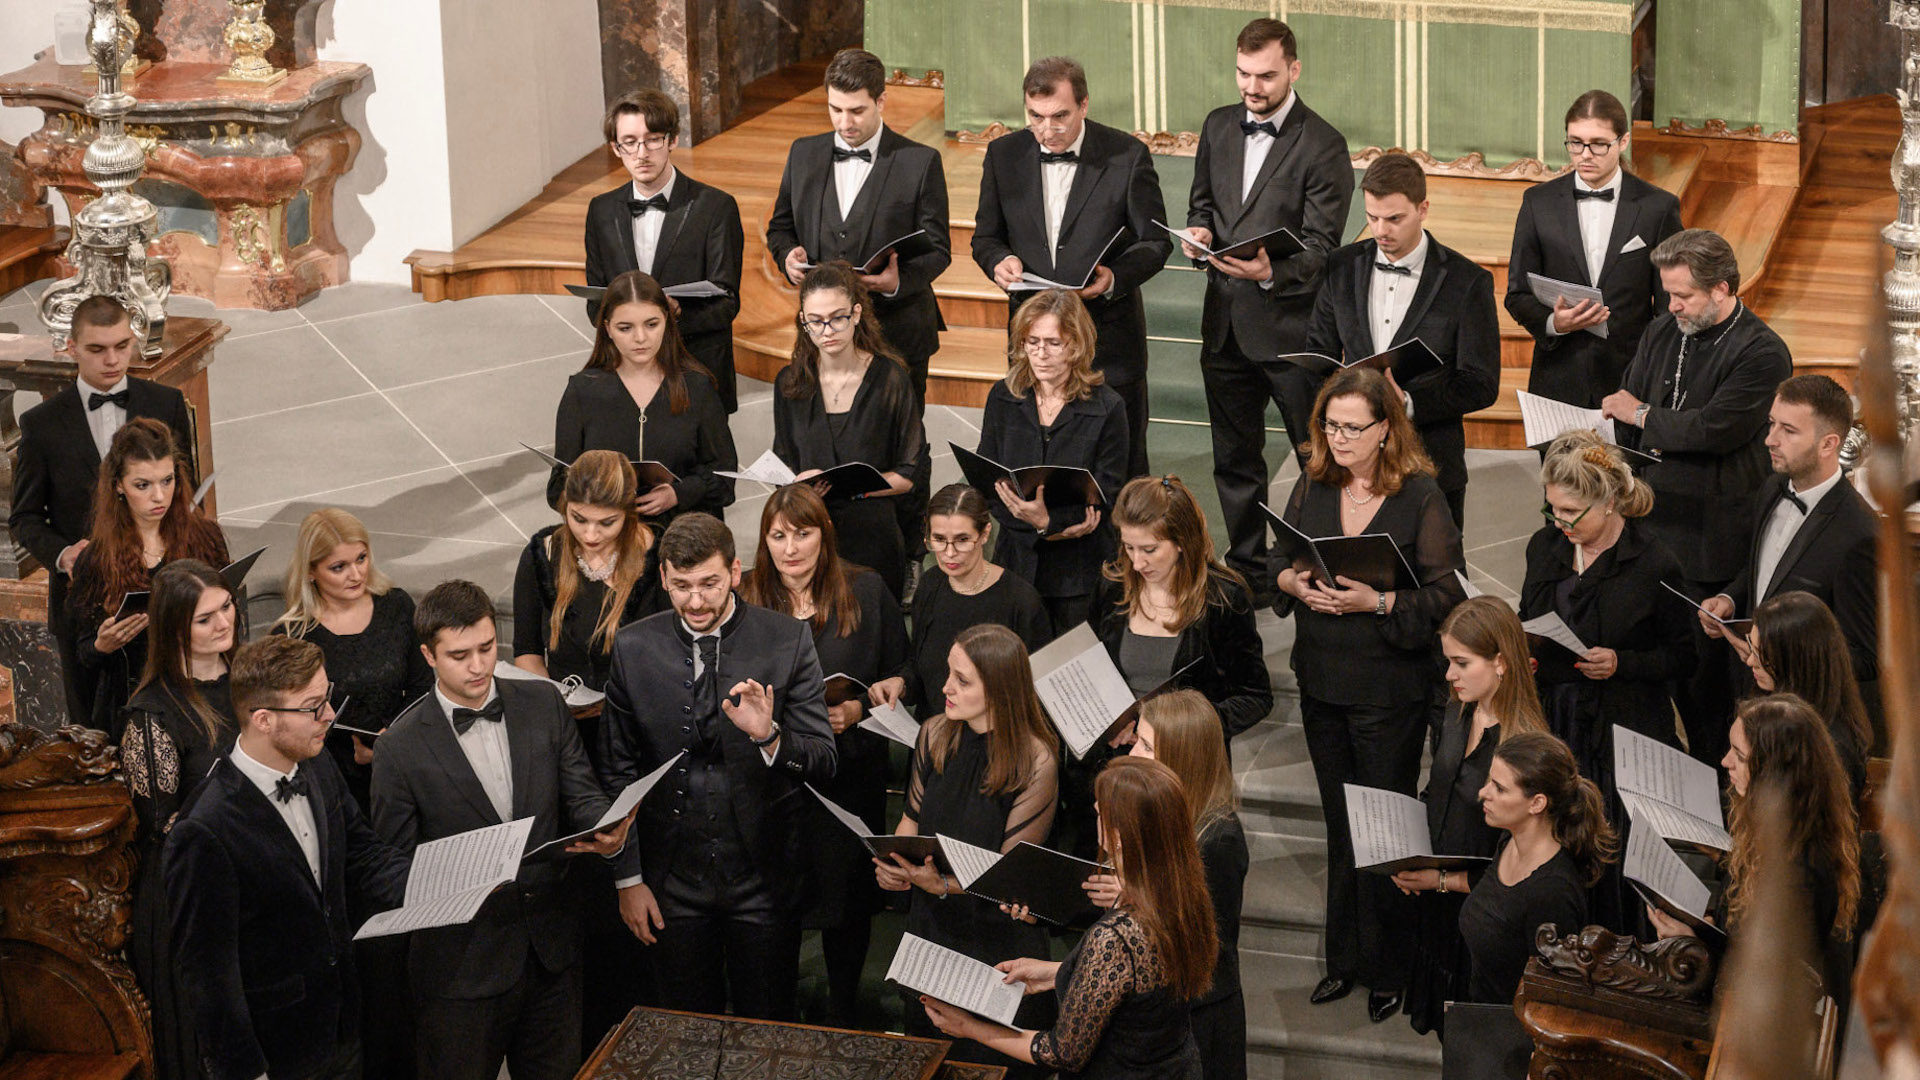 Der serbisch-orthodoxe Kirchenchor Bogorodicin anlässiich eines Konzertes in Beromünster.